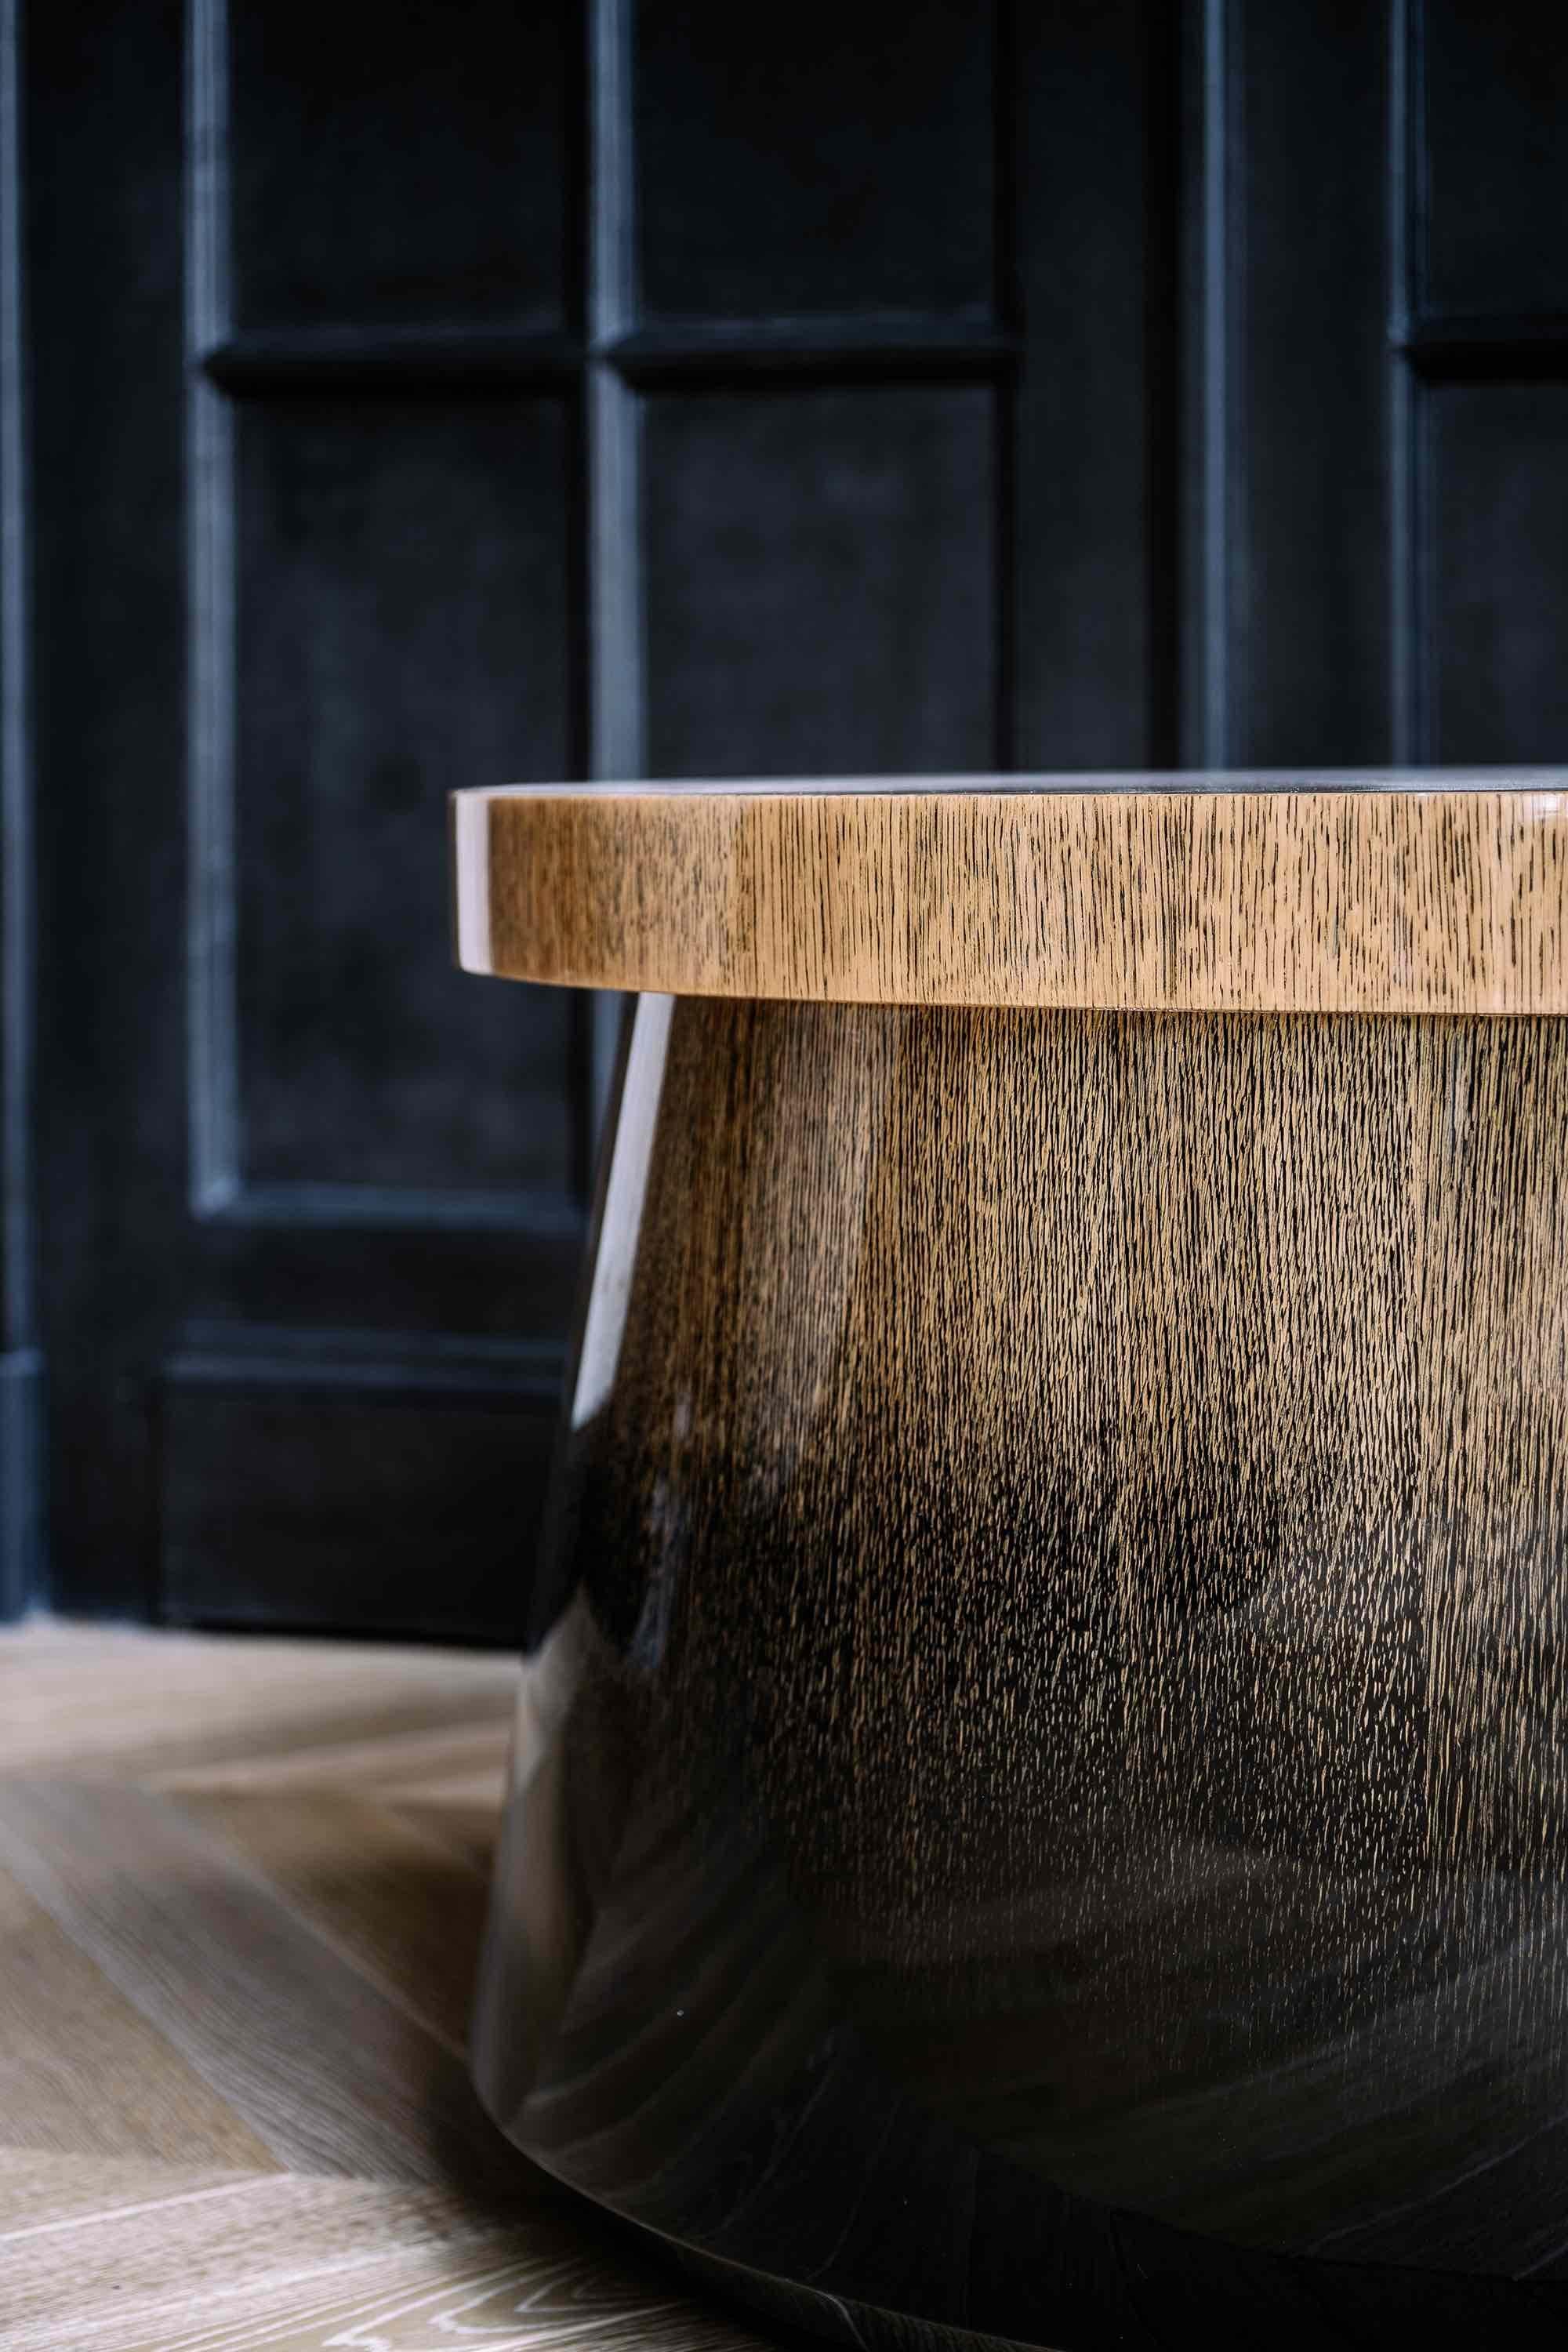 La table basse Temple, de Tristan Auer, est réalisée en chêne clair dégradé à l'encre et recouvert d'un vernis brillant.
Dimensions : 31,4